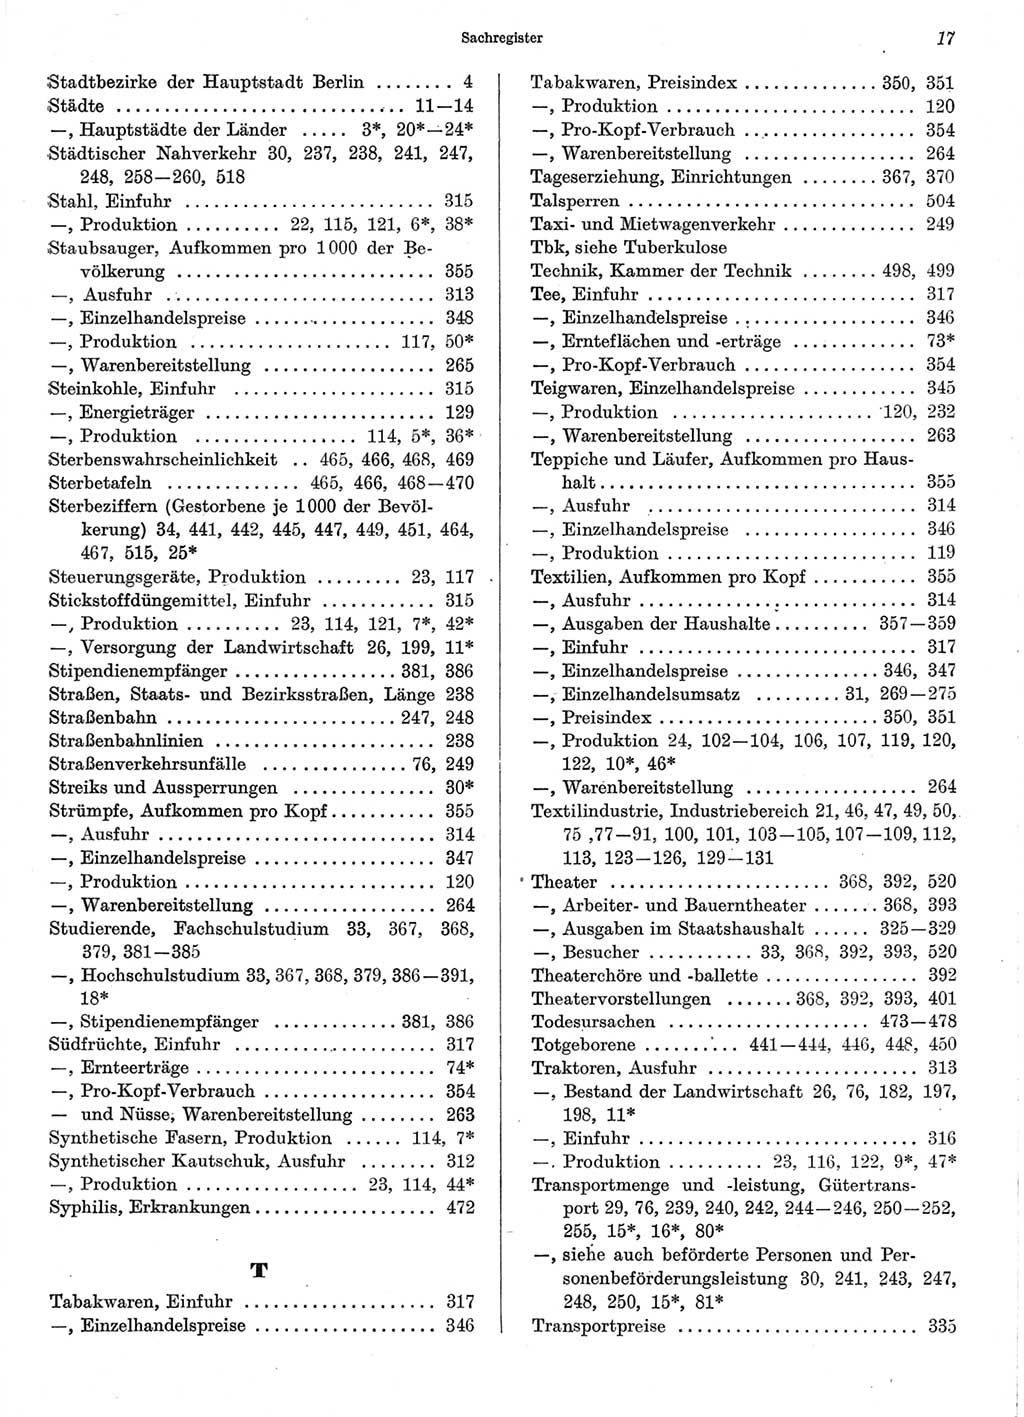 Statistisches Jahrbuch der Deutschen Demokratischen Republik (DDR) 1970, Seite 17 (Stat. Jb. DDR 1970, S. 17)